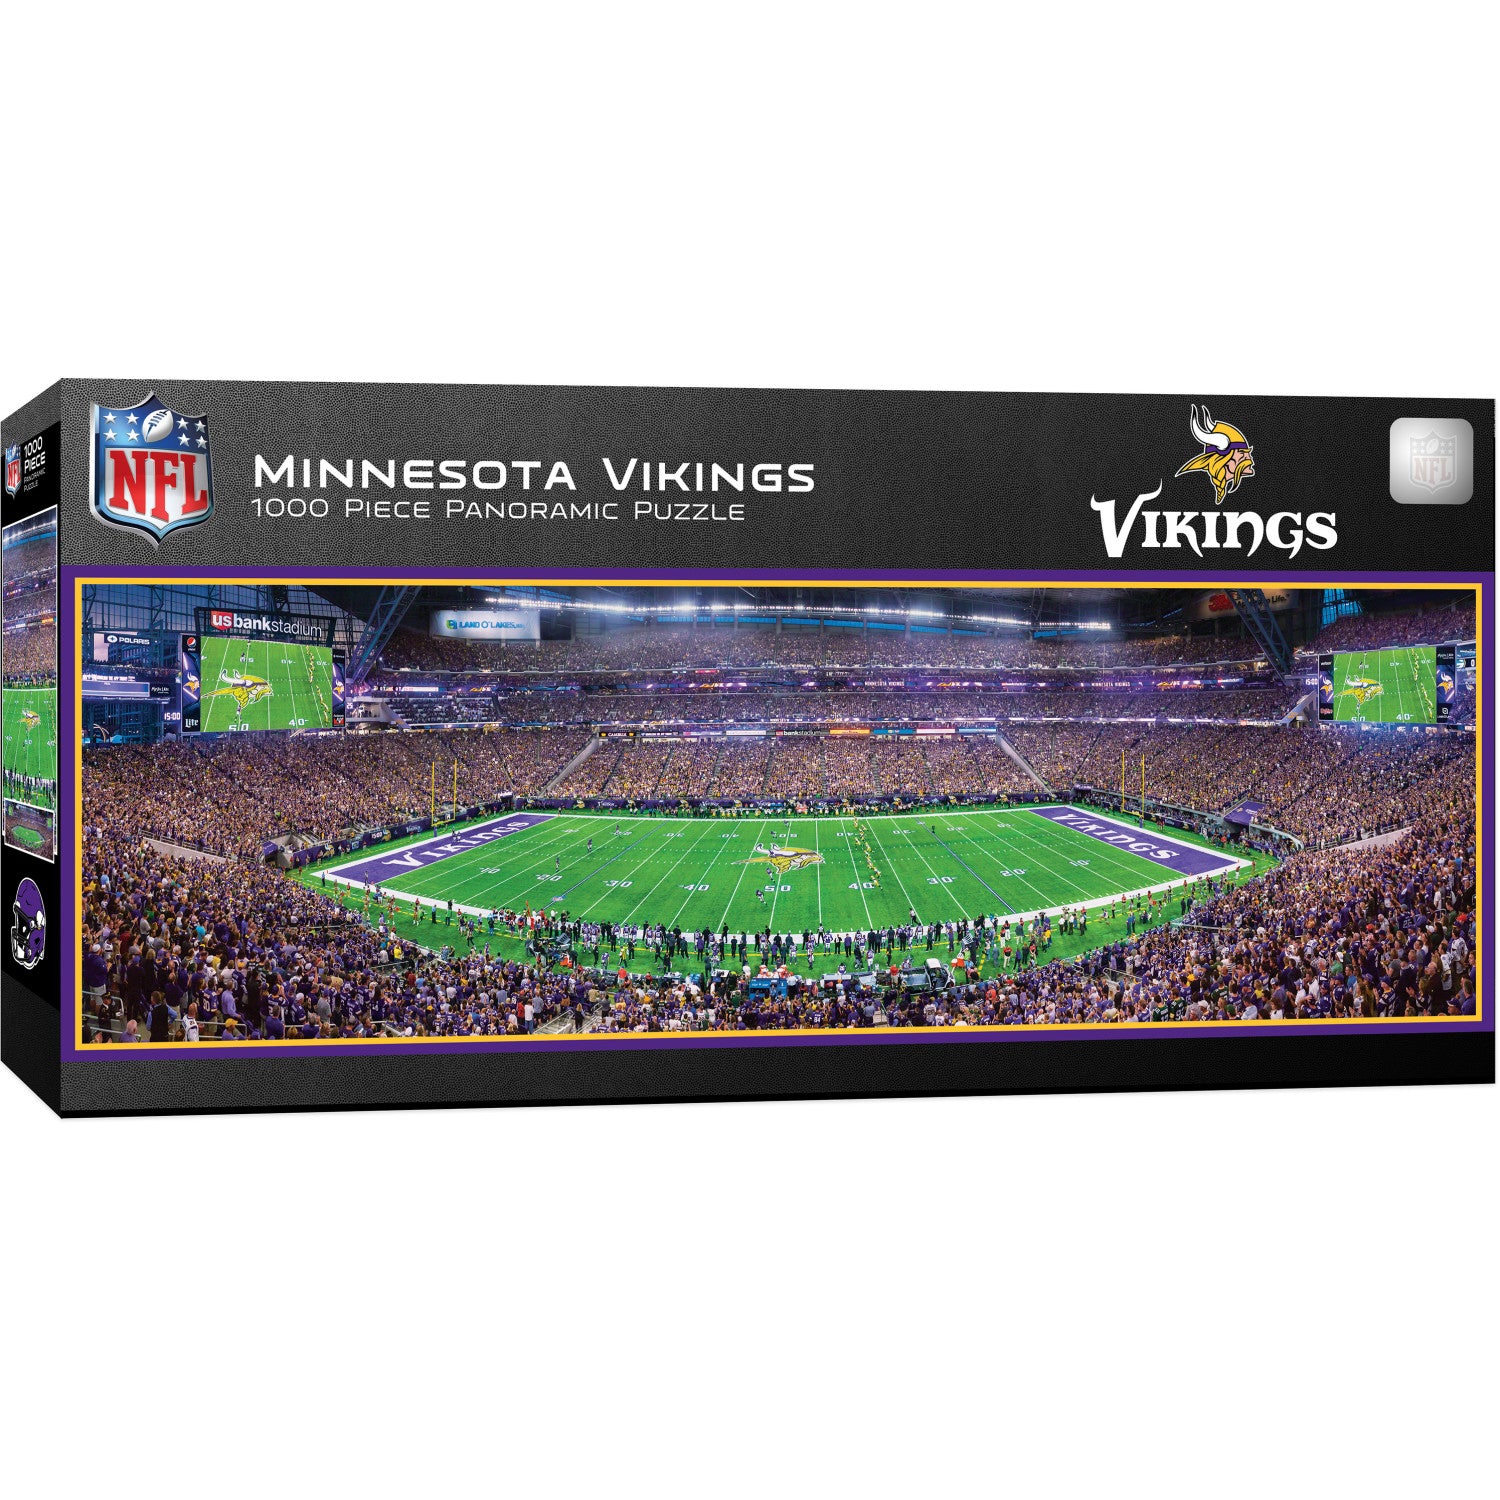 Minnesota Vikings - 1000 Piece Panoramic Puzzle